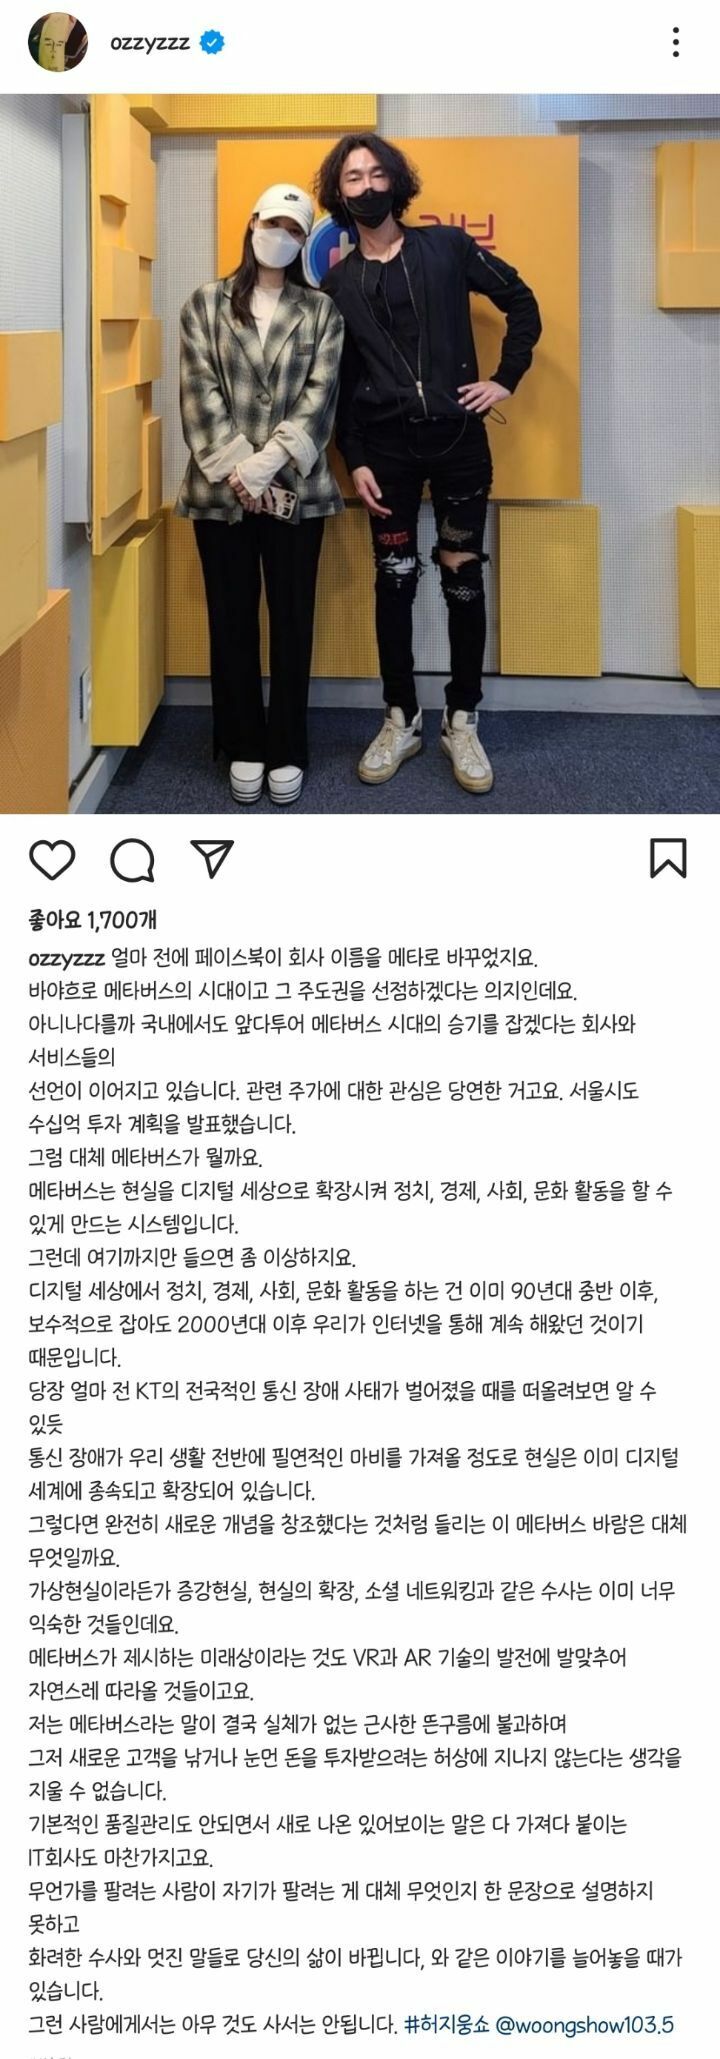 What is Heo Jiwoong's Instagram Metabus?